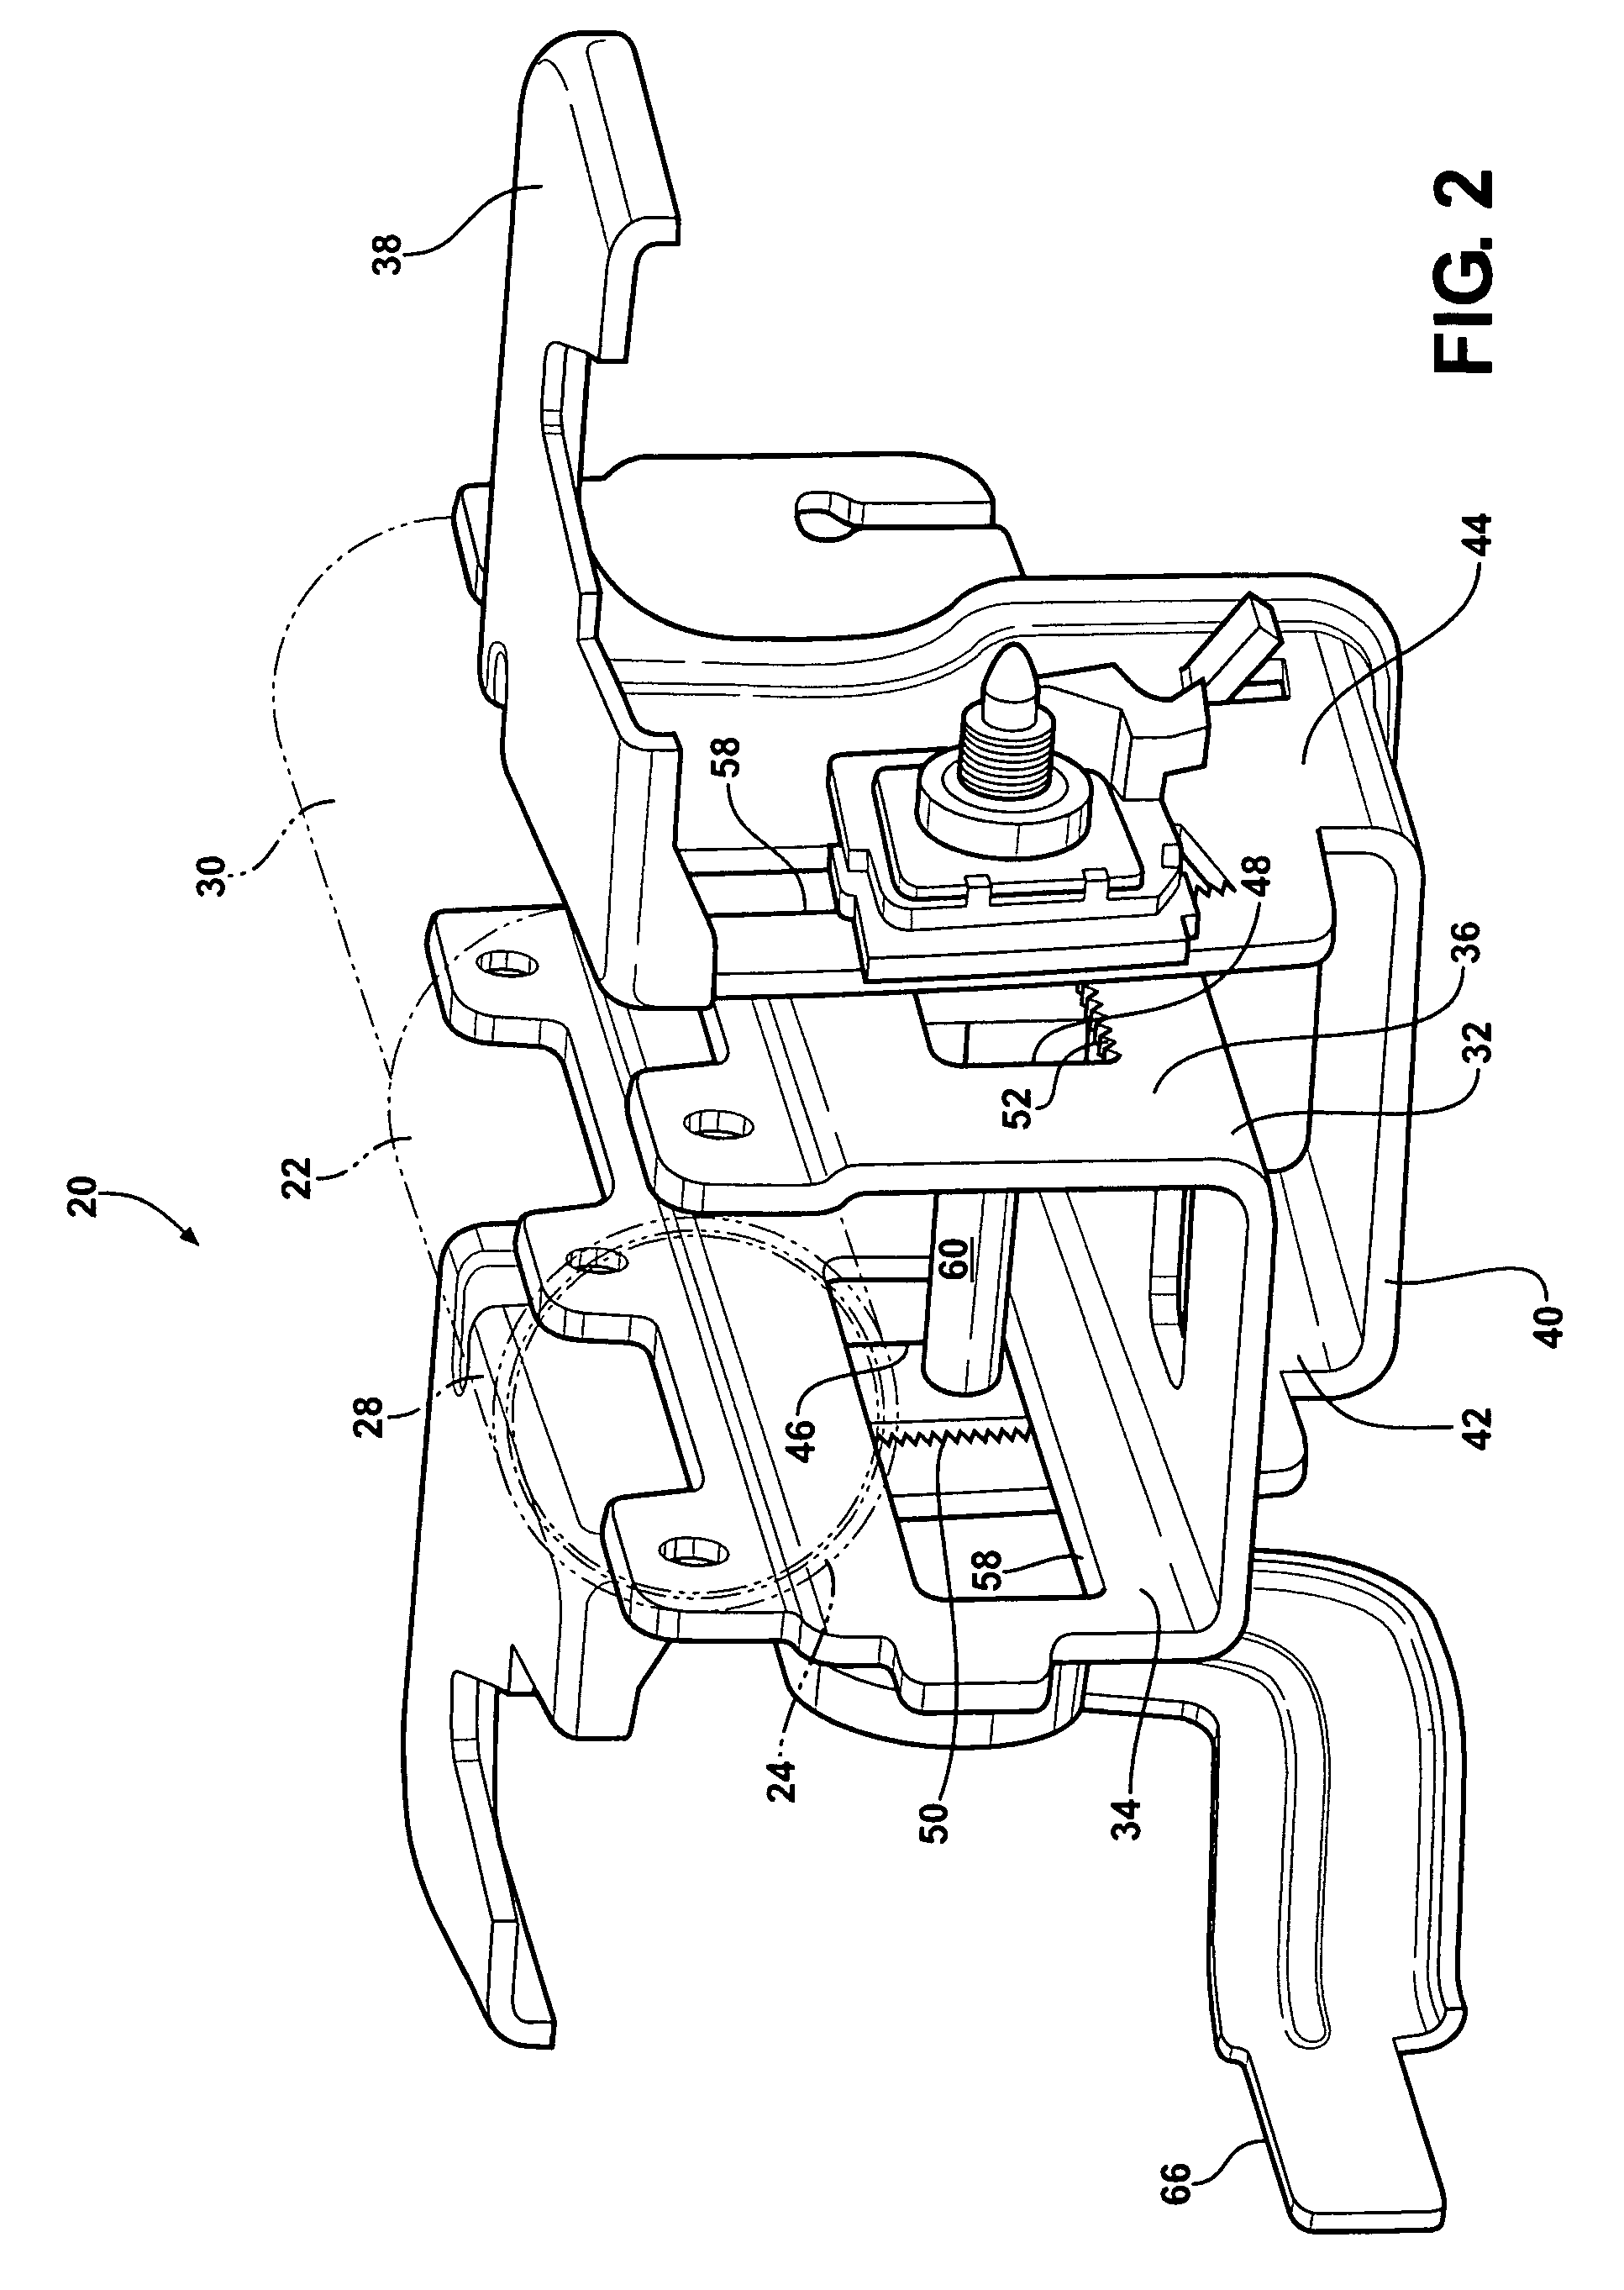 Locking mechanism for an adjustable steering column having impact teeth